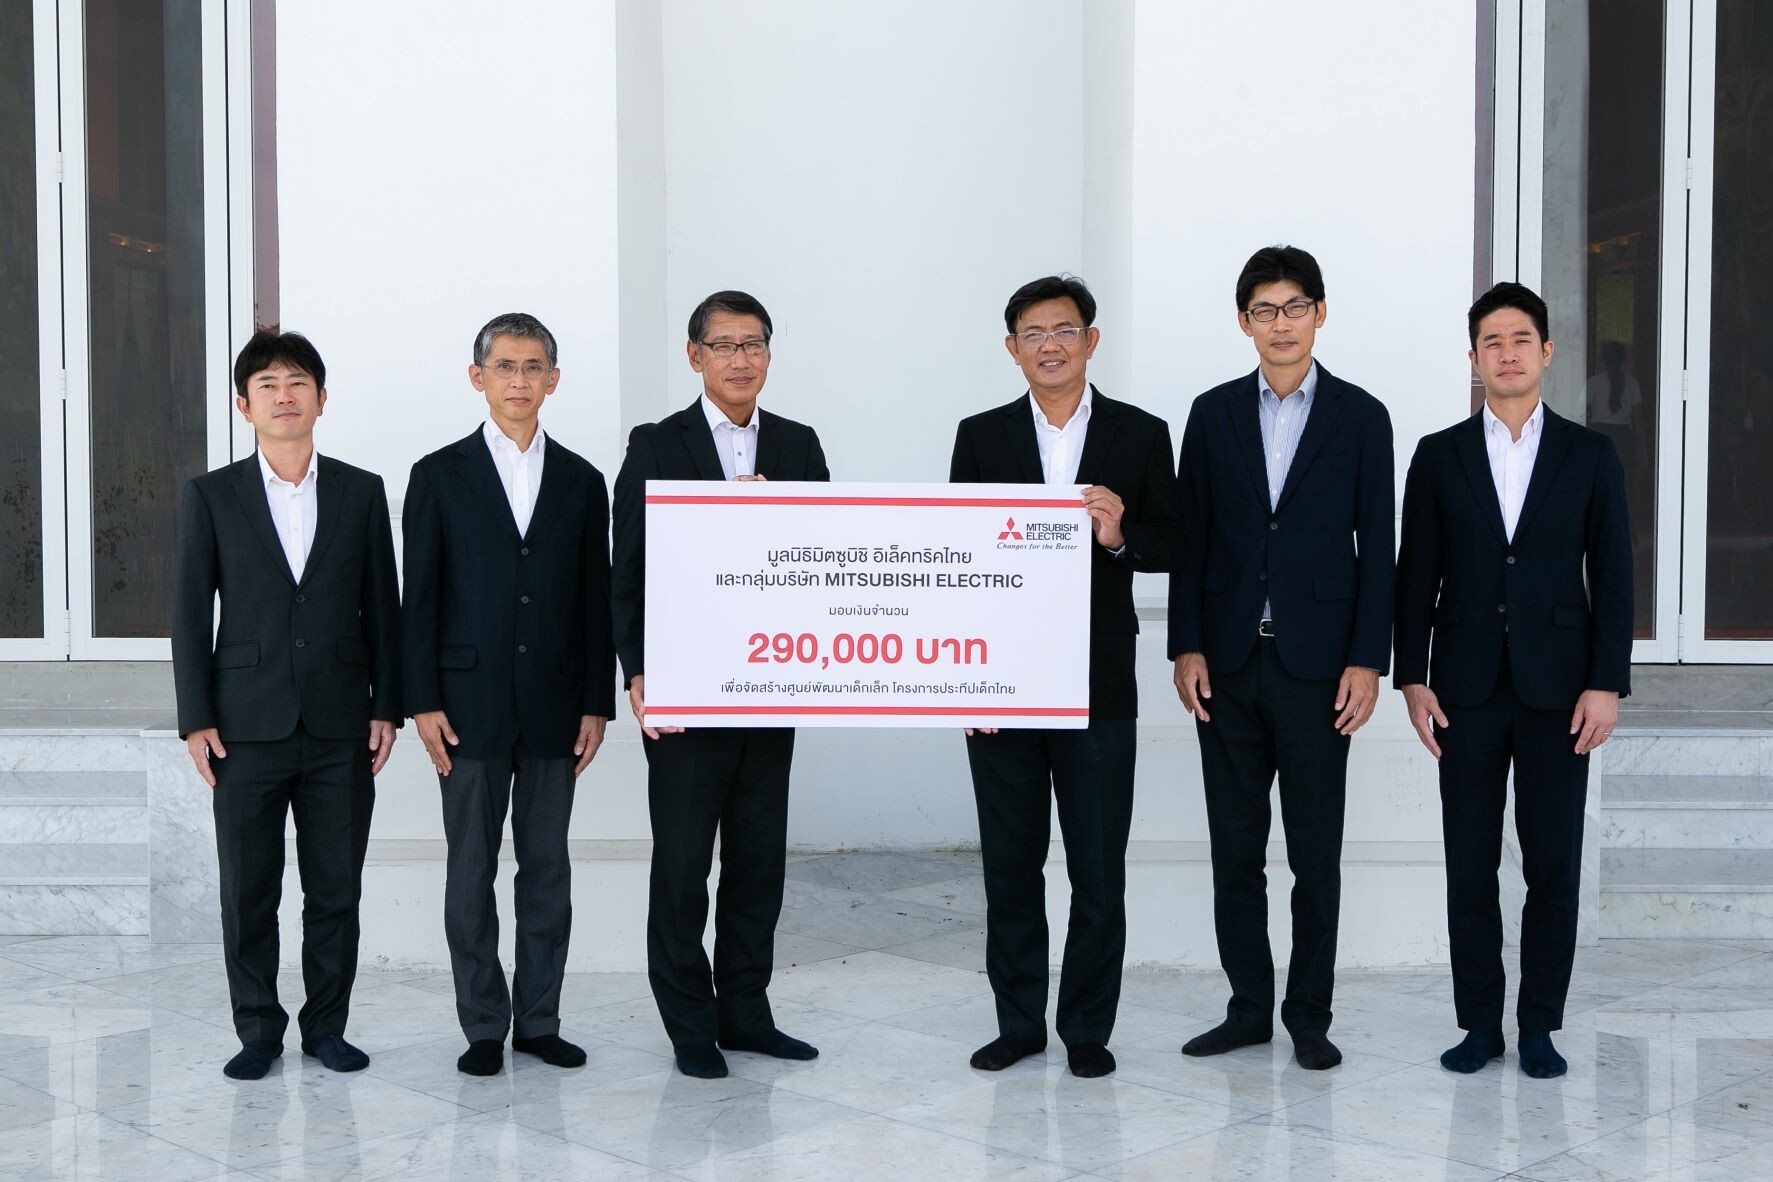 มูลนิธิมิตซูบิชิ อิเล็คทริคไทย และกลุ่มบริษัท Mitsubishi Electric สนับสนุนโครงการประทีปเด็กไทย ต่อเนื่องเป็น ปีที่ 6